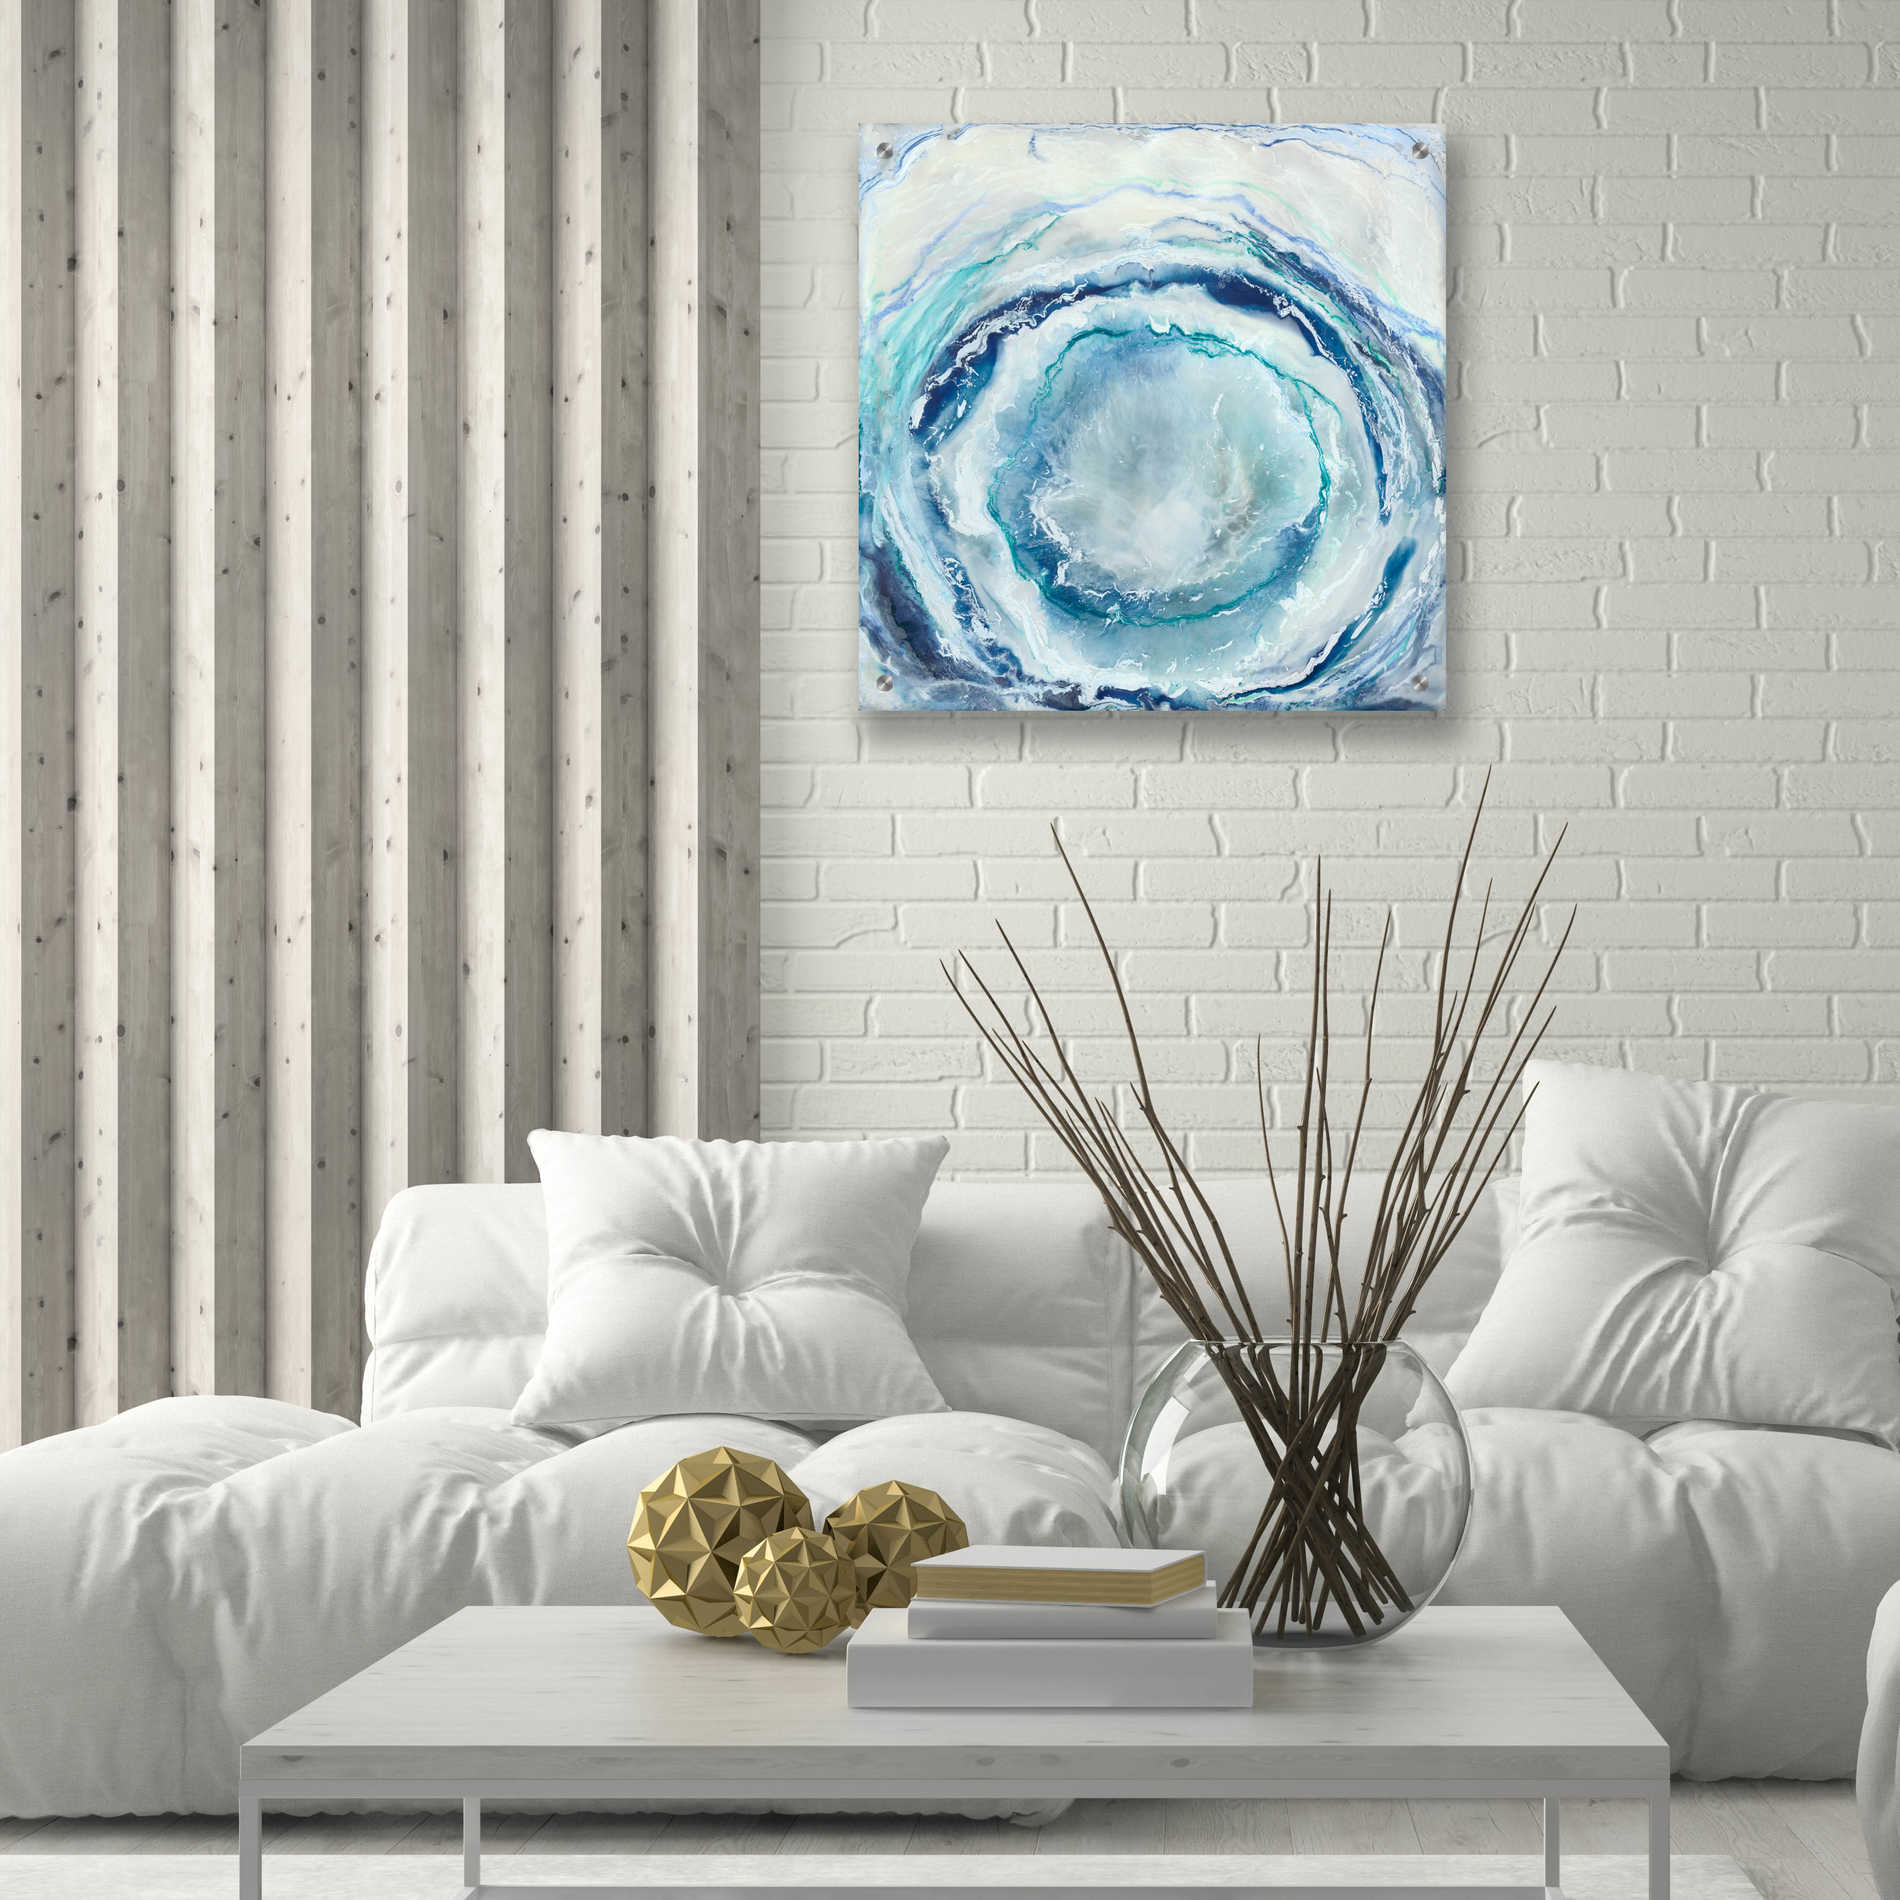 Epic Art 'Ocean Eye I' by Renee W Stramel, Acrylic Glass Wall Art,24x24